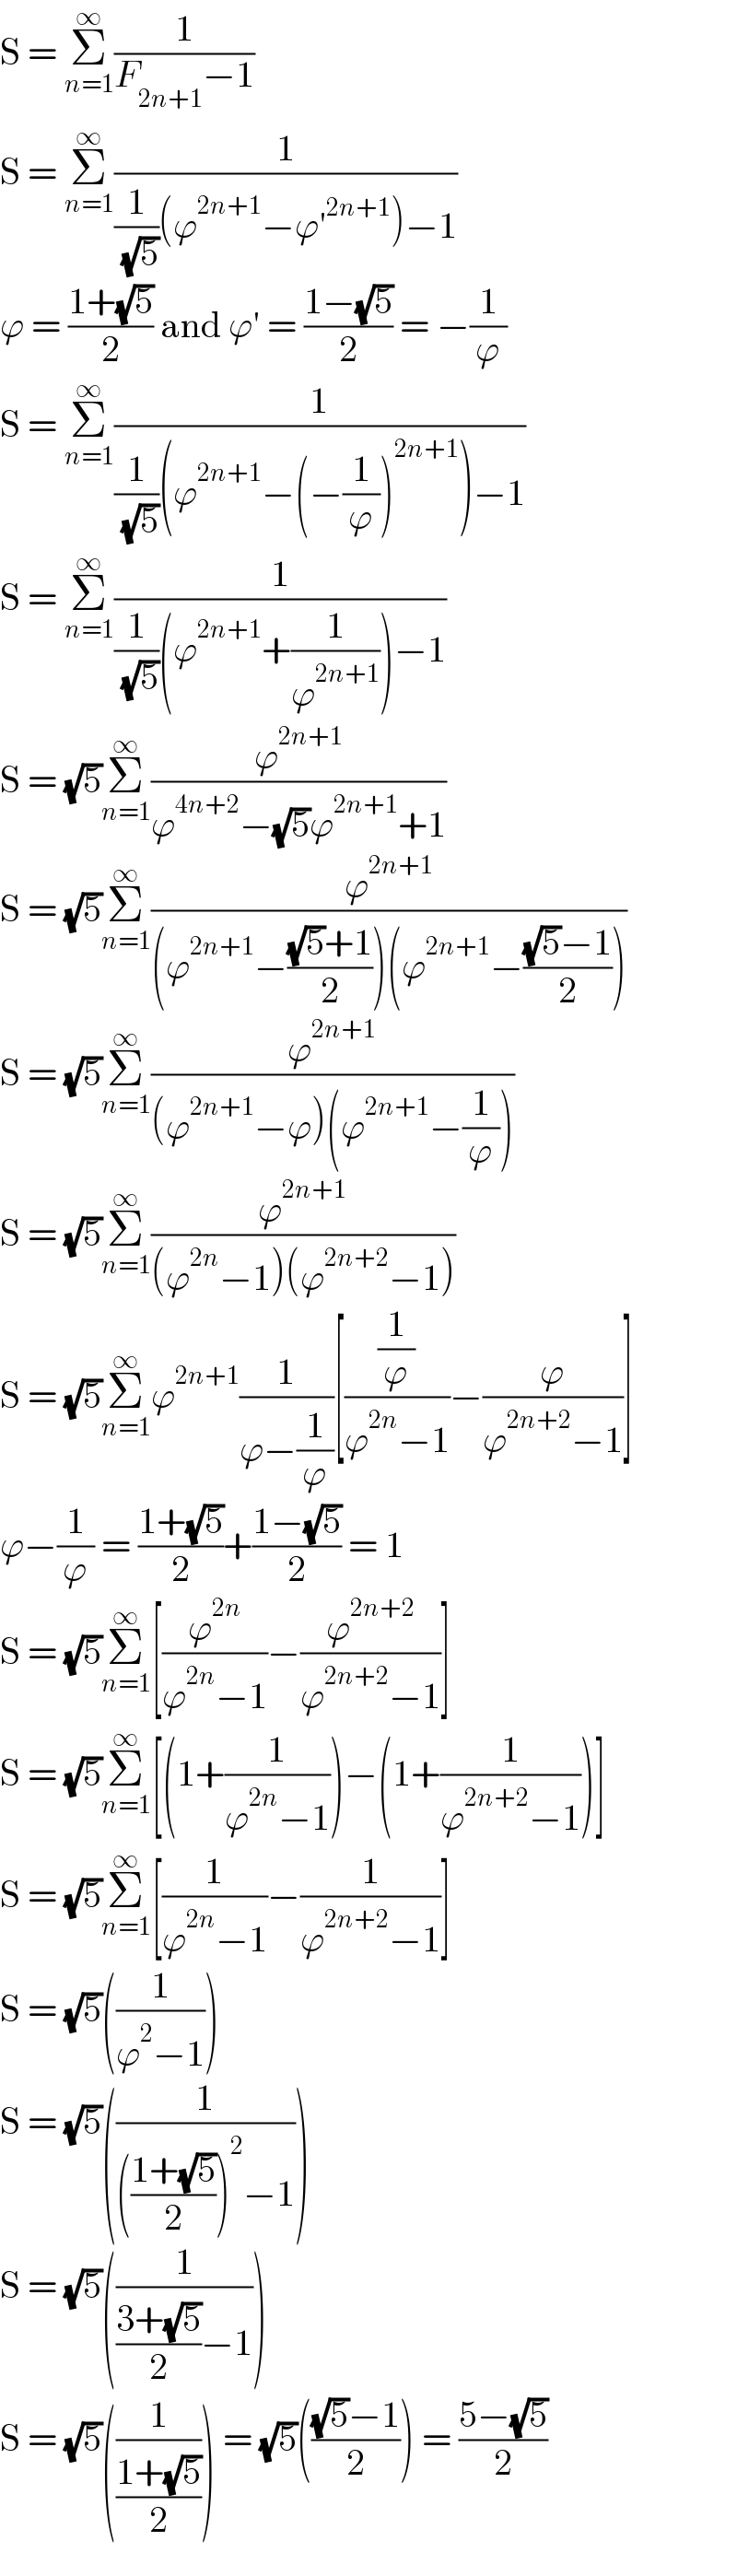 S = Σ_(n=1) ^∞ (1/(F_(2n+1) −1))  S = Σ_(n=1) ^∞ (1/((1/( (√5)))(ϕ^(2n+1) −ϕ′^(2n+1) )−1))  ϕ = ((1+(√5))/2) and ϕ′ = ((1−(√5))/2) = −(1/ϕ)  S = Σ_(n=1) ^∞ (1/((1/( (√5)))(ϕ^(2n+1) −(−(1/ϕ))^(2n+1) )−1))  S = Σ_(n=1) ^∞ (1/((1/( (√5)))(ϕ^(2n+1) +(1/ϕ^(2n+1) ))−1))  S = (√5)Σ_(n=1) ^∞ (ϕ^(2n+1) /(ϕ^(4n+2) −(√5)ϕ^(2n+1) +1))  S = (√5)Σ_(n=1) ^∞ (ϕ^(2n+1) /((ϕ^(2n+1) −(((√5)+1)/2))(ϕ^(2n+1) −(((√5)−1)/2))))  S = (√5)Σ_(n=1) ^∞ (ϕ^(2n+1) /((ϕ^(2n+1) −ϕ)(ϕ^(2n+1) −(1/ϕ))))  S = (√5)Σ_(n=1) ^∞ (ϕ^(2n+1) /((ϕ^(2n) −1)(ϕ^(2n+2) −1)))  S = (√5)Σ_(n=1) ^∞ ϕ^(2n+1) (1/(ϕ−(1/ϕ)))[((1/ϕ)/(ϕ^(2n) −1))−(ϕ/(ϕ^(2n+2) −1))]  ϕ−(1/ϕ) = ((1+(√5))/2)+((1−(√5))/2) = 1  S = (√5)Σ_(n=1) ^∞ [(ϕ^(2n) /(ϕ^(2n) −1))−(ϕ^(2n+2) /(ϕ^(2n+2) −1))]  S = (√5)Σ_(n=1) ^∞ [(1+(1/(ϕ^(2n) −1)))−(1+(1/(ϕ^(2n+2) −1)))]  S = (√5)Σ_(n=1) ^∞ [(1/(ϕ^(2n) −1))−(1/(ϕ^(2n+2) −1))]  S = (√5)((1/(ϕ^2 −1)))  S = (√5)((1/((((1+(√5))/2))^2 −1)))  S = (√5)((1/(((3+(√5))/2)−1)))  S = (√5)((1/((1+(√5))/2))) = (√5)((((√5)−1)/2)) = ((5−(√5))/2)  